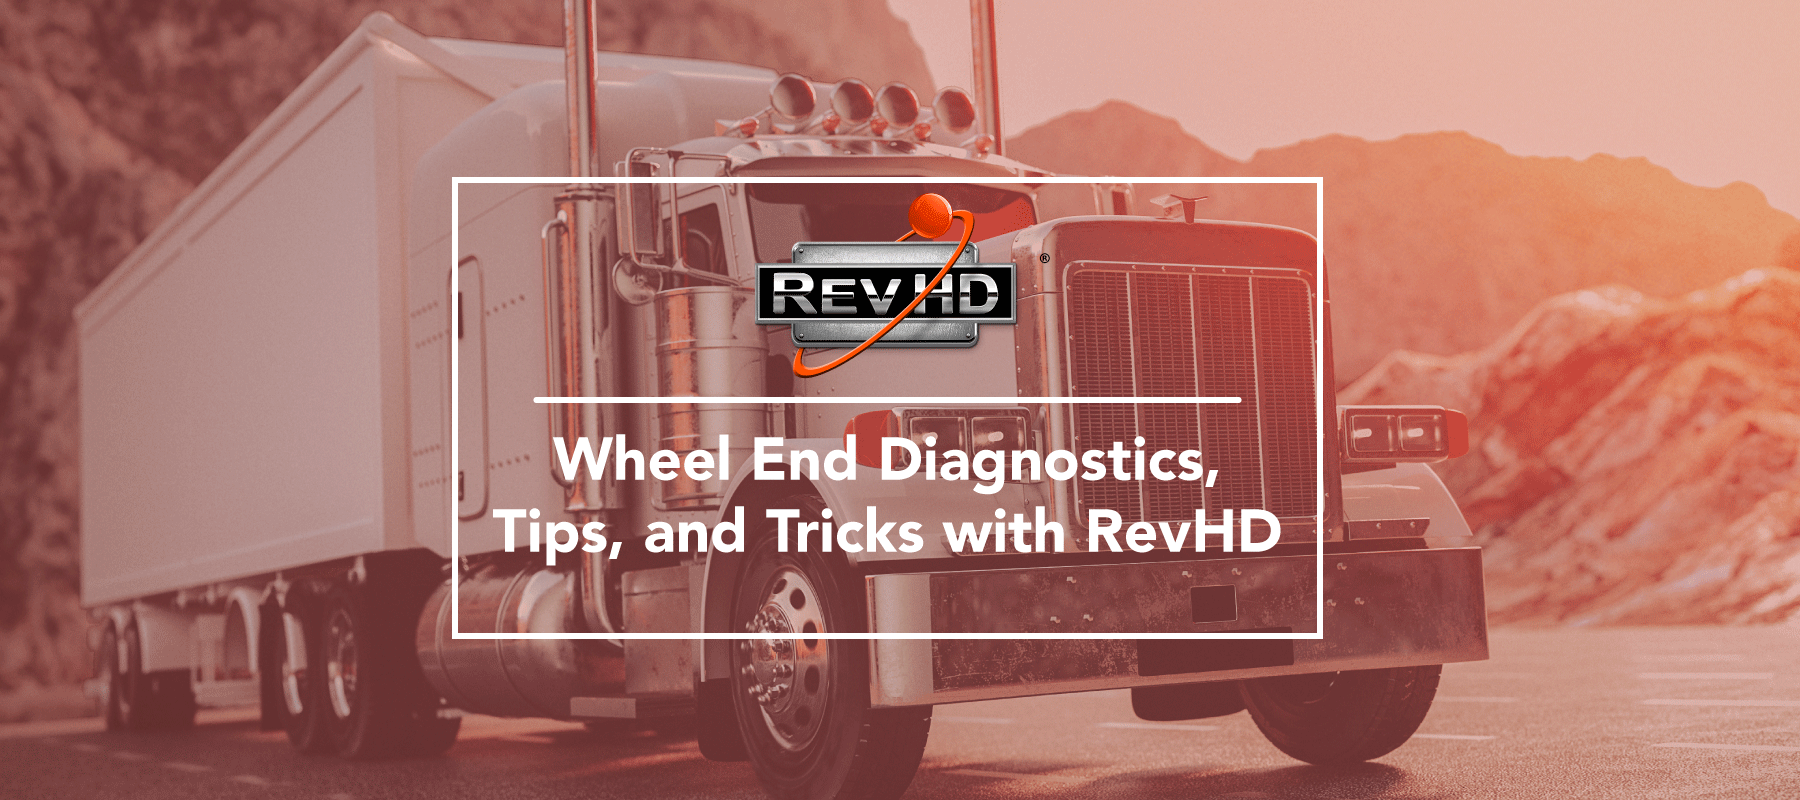 RevHD Wheel End Diagnostics Webinar